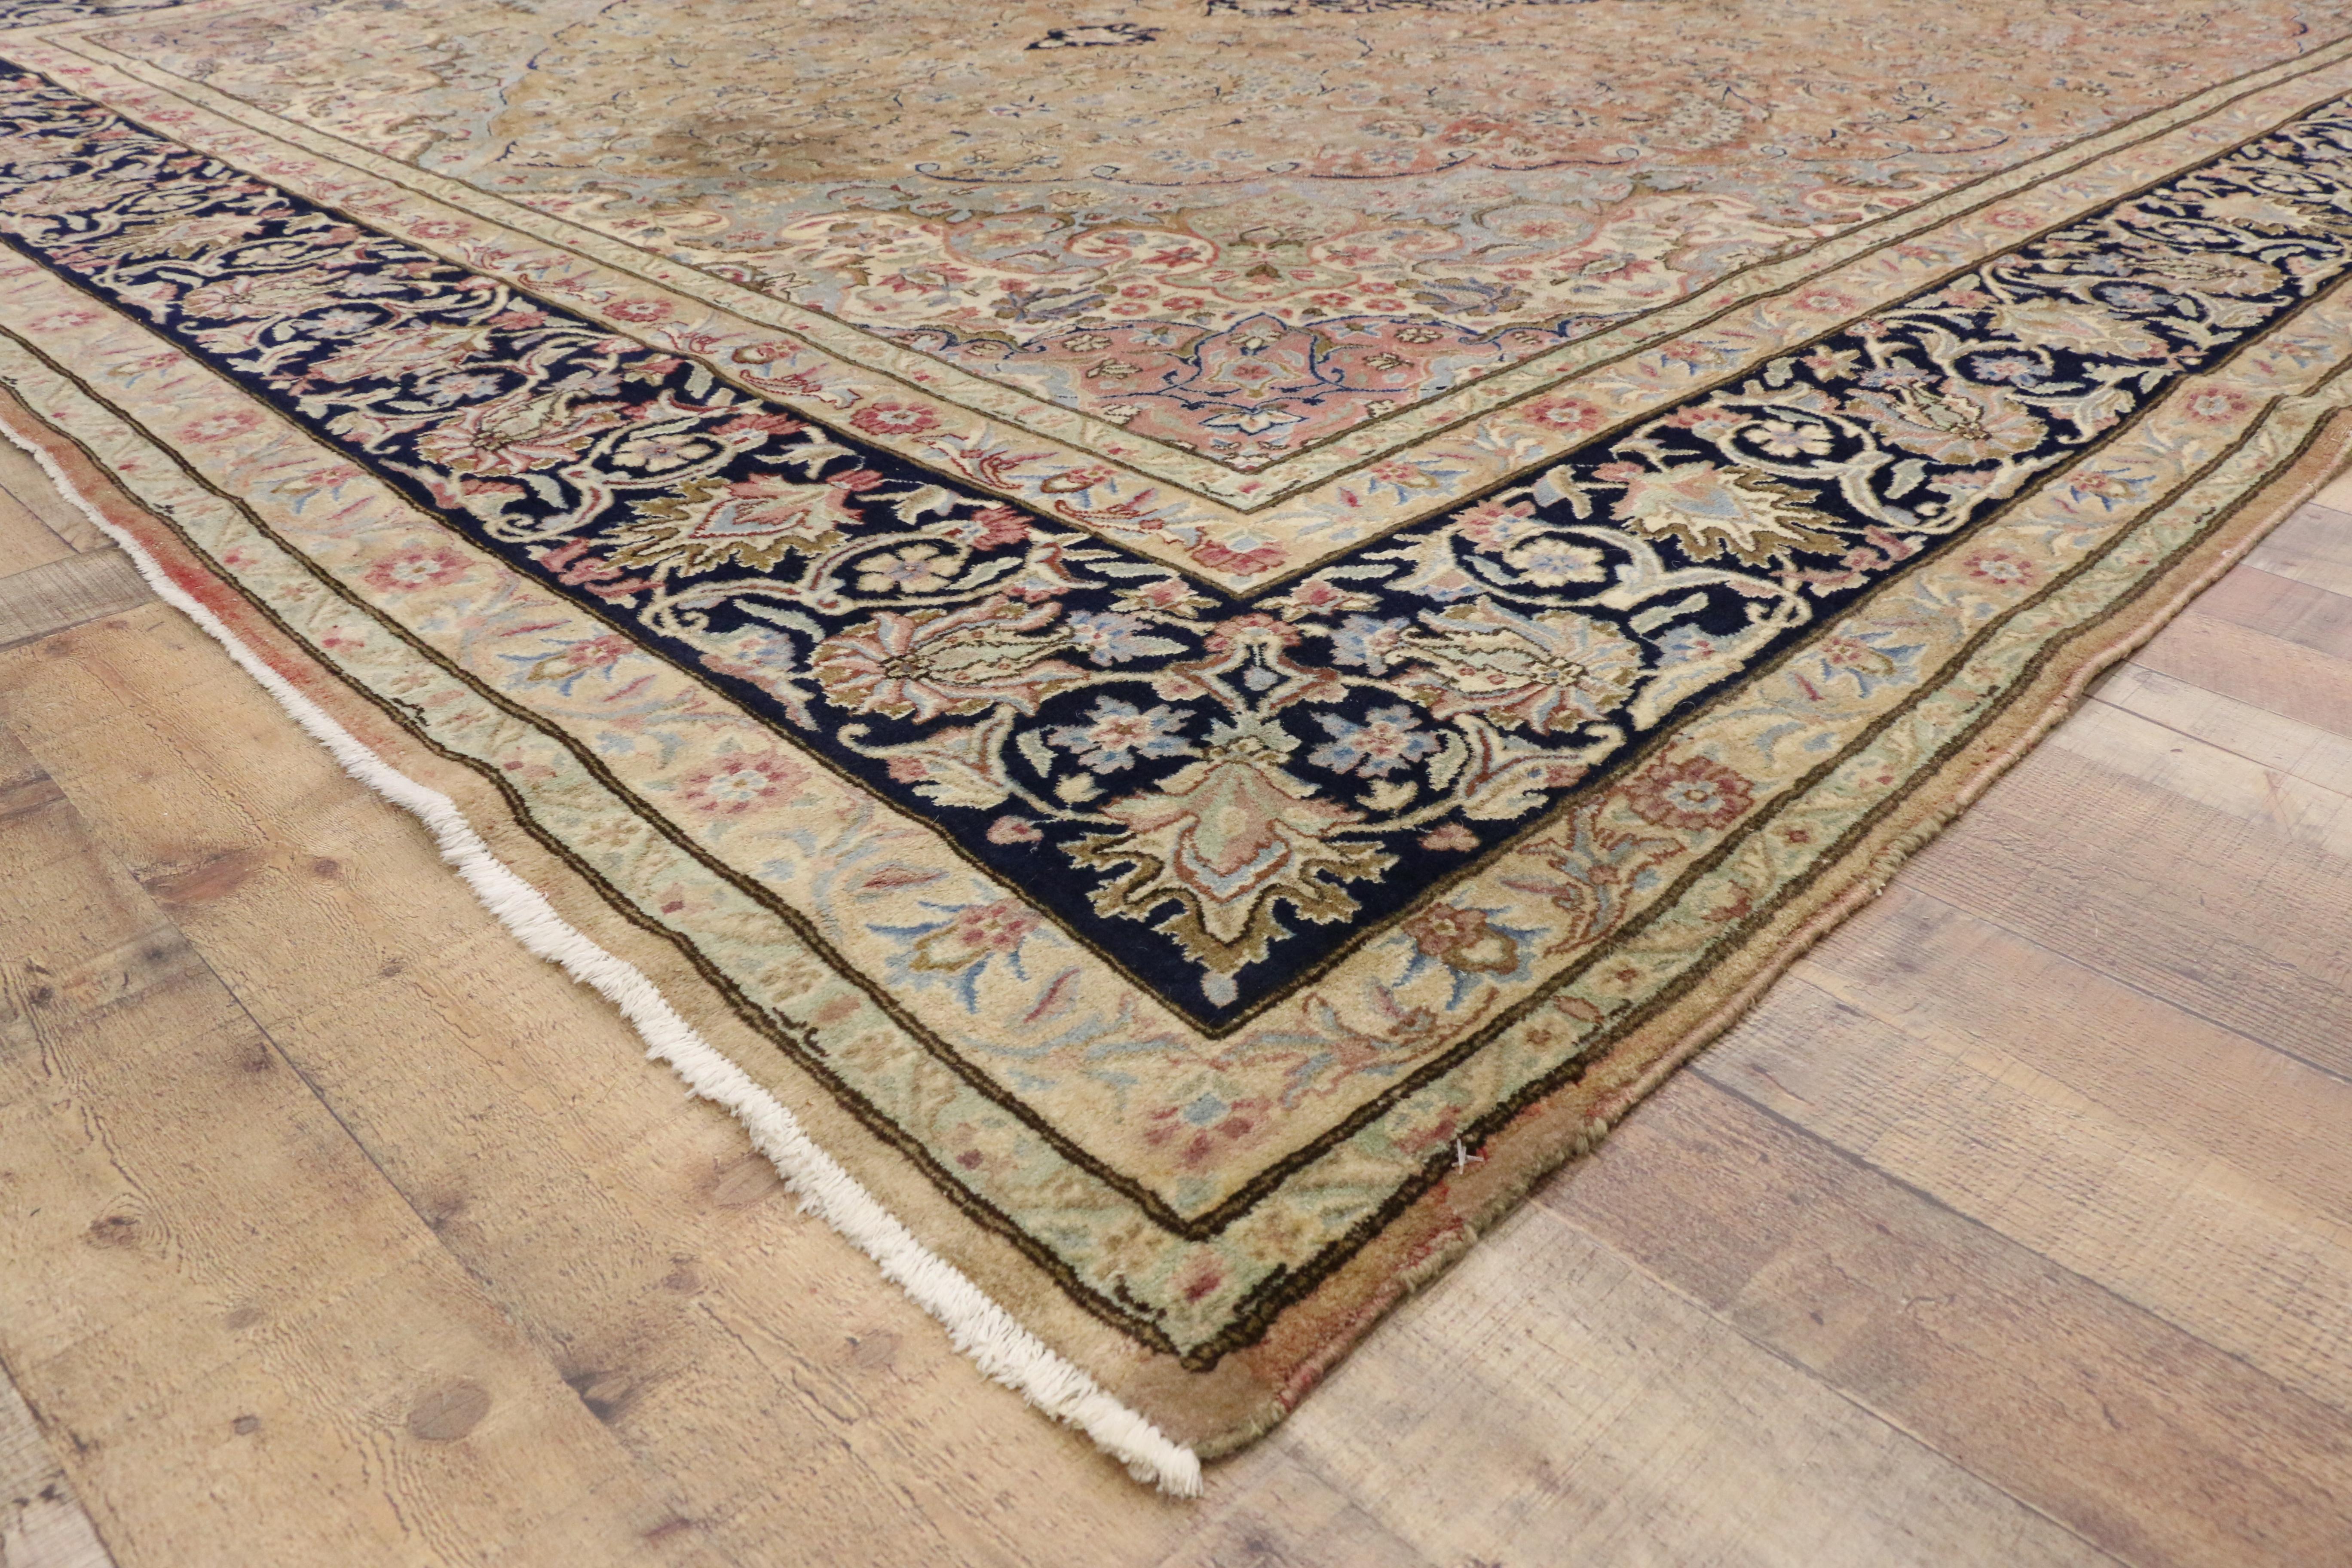 76515, tapis persan Kerman vieilli, tapis vintage Kirman. Délicatement usé par les intempéries et bien entretenu, ce tapis persan vintage Kirman possède une beauté intemporelle enrichie par l'âge. Au centre, un médaillon Kerman en forme de losange à